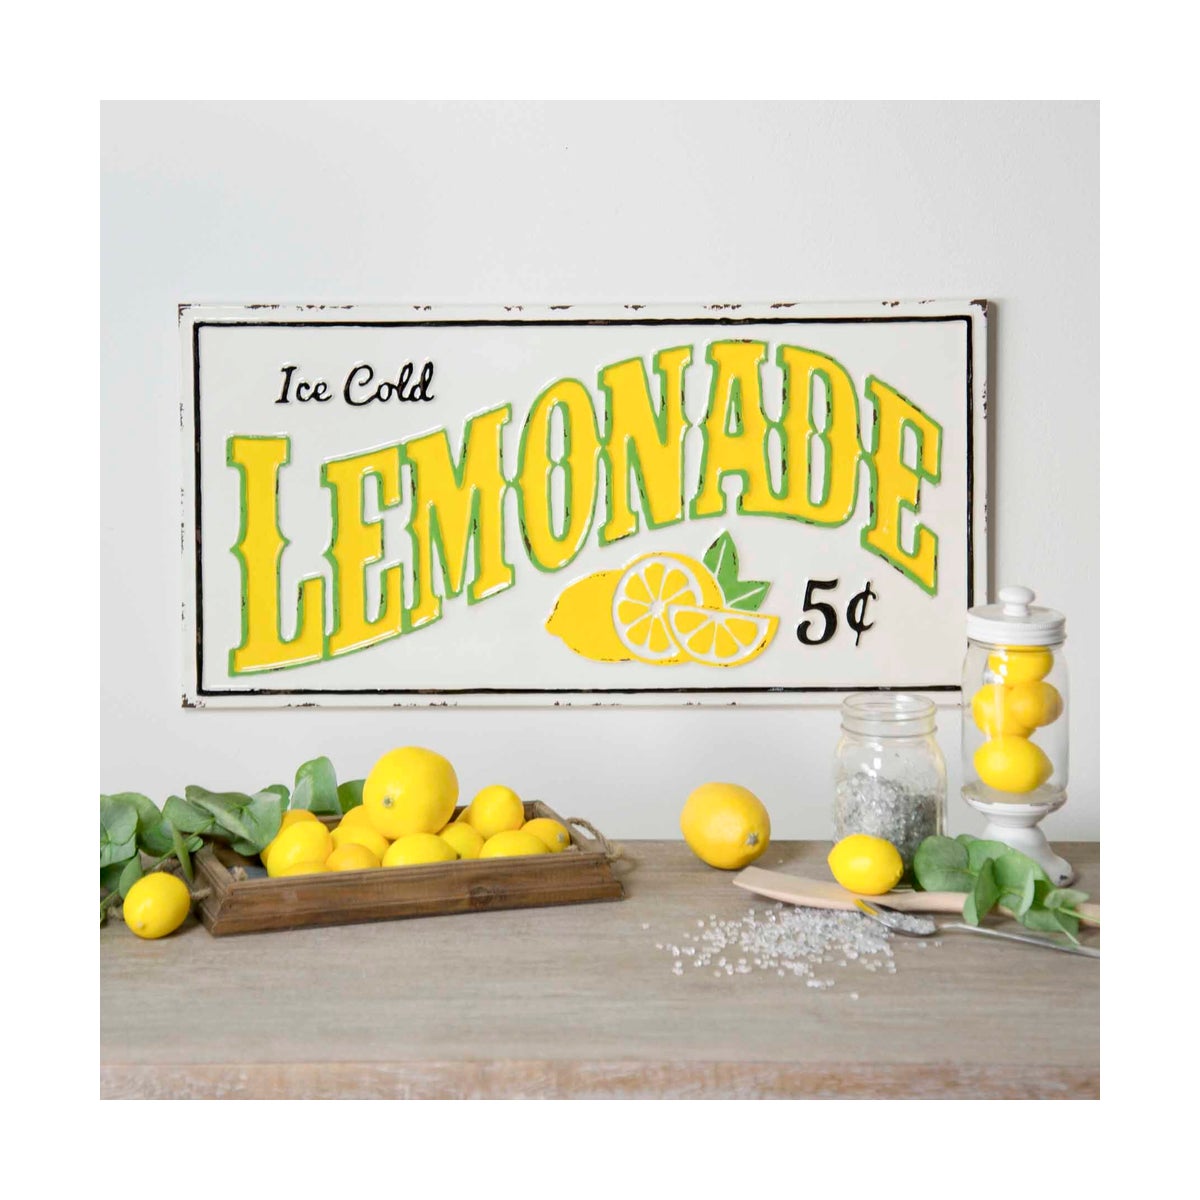 Mtl Sign Lemonade 5 Cents